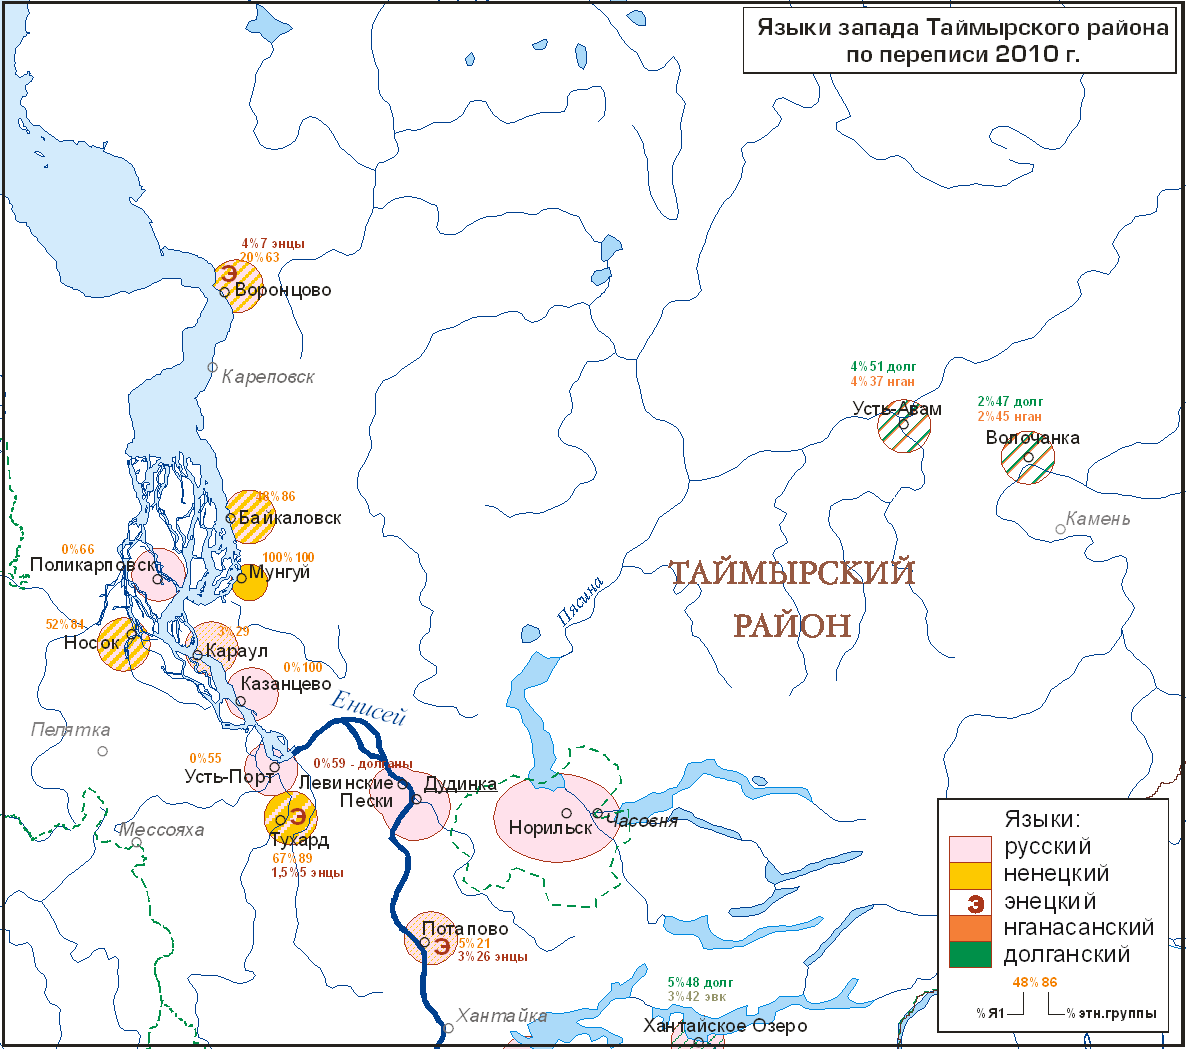 Языки запада Таймырского района по переписи 2010 г.; автор Ю. Б. Коряков